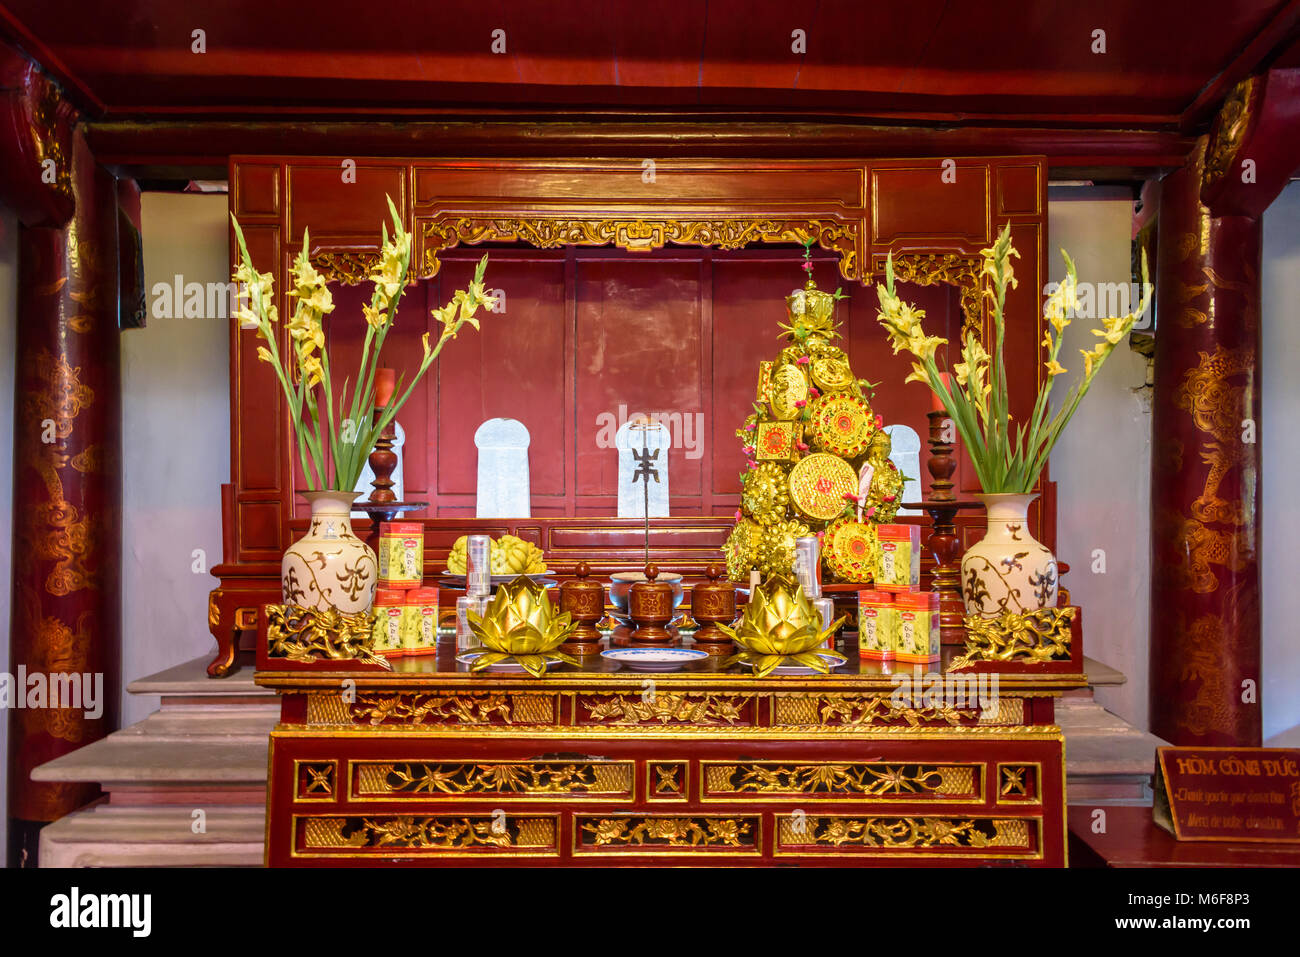 Altare laden con doni di cibo, fiori e denaro presso il Tempio della Letteratura ad Hanoi, Vietnam Foto Stock